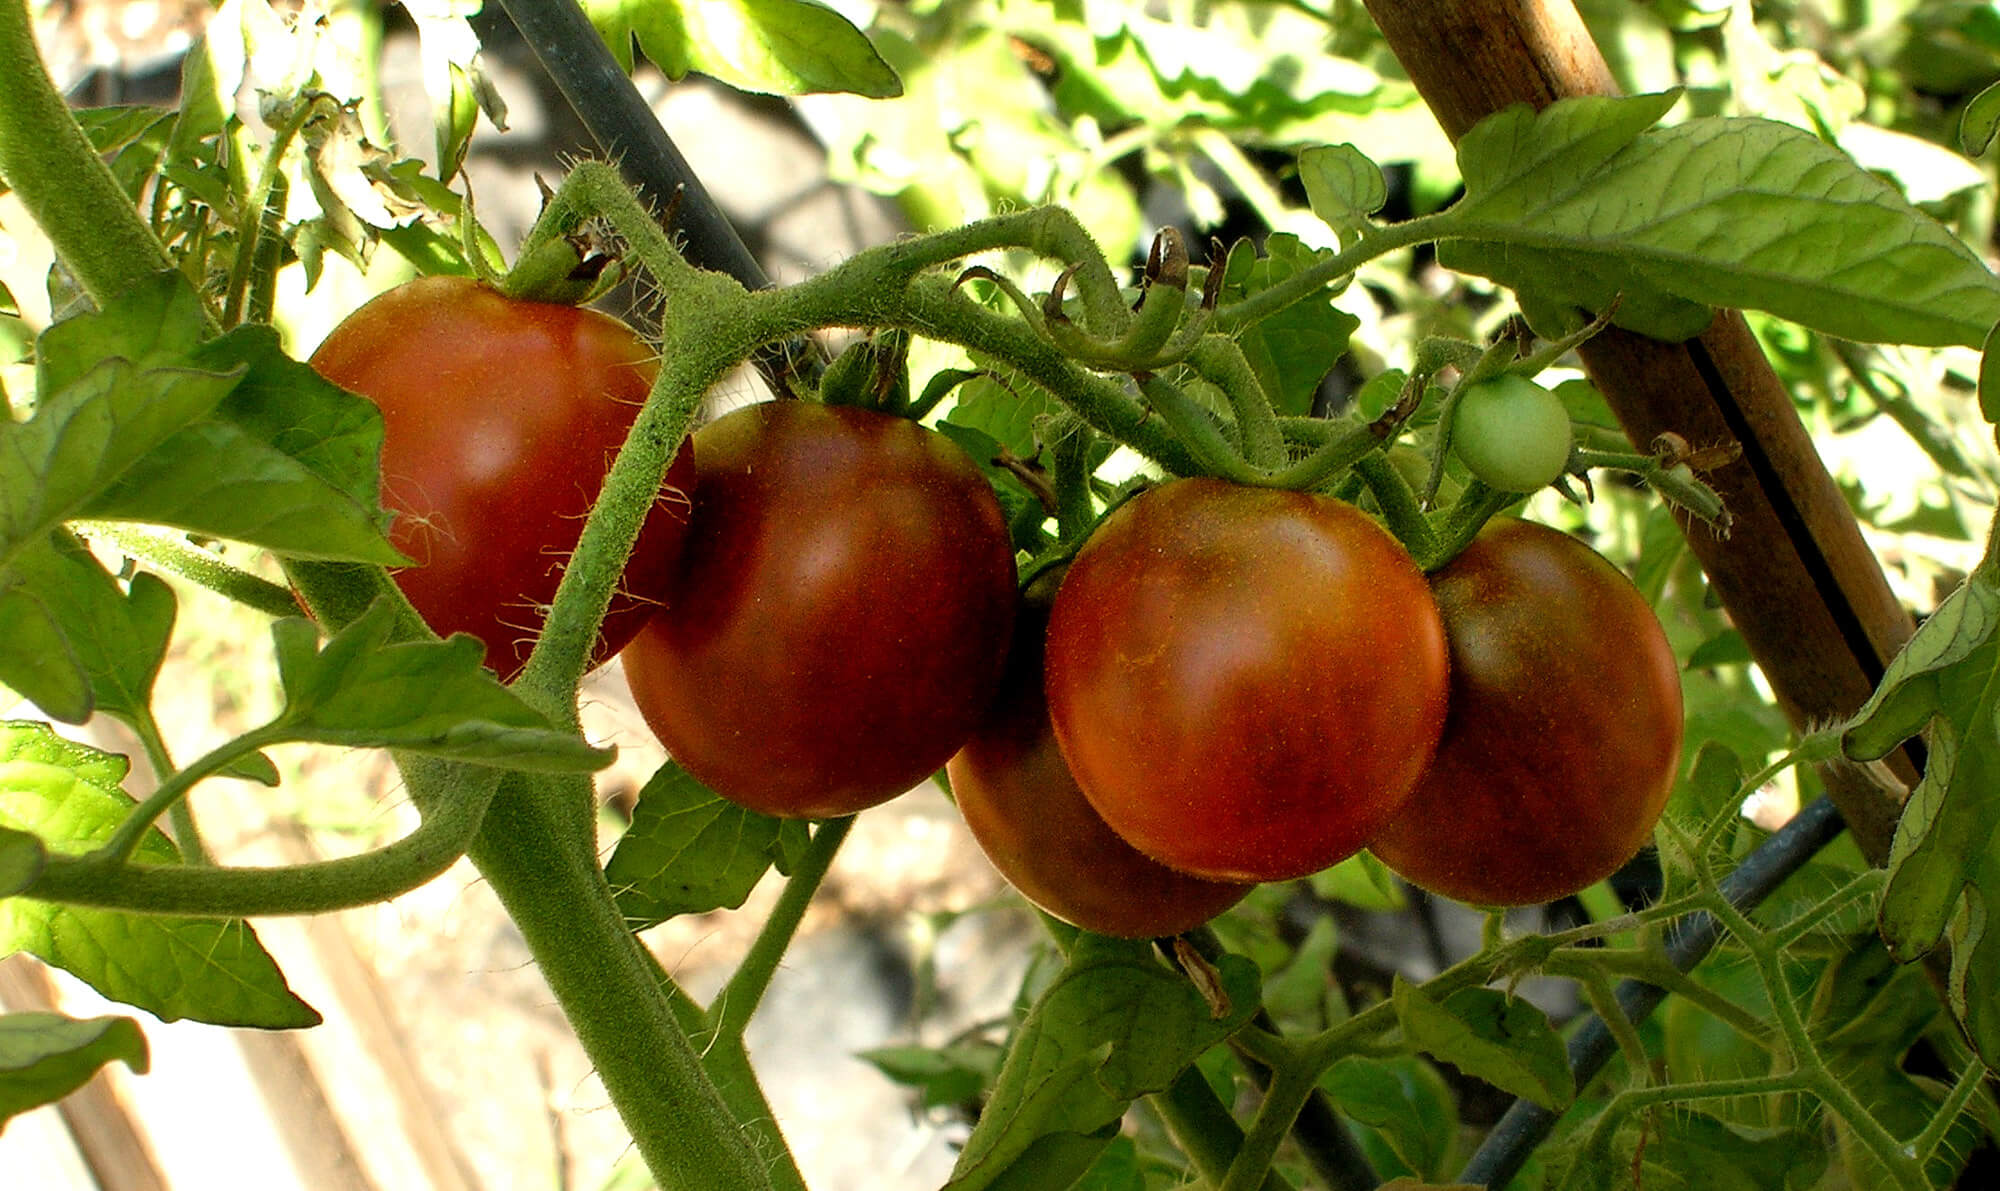 black cherry tomato - Photo by Helen Krayenhoff